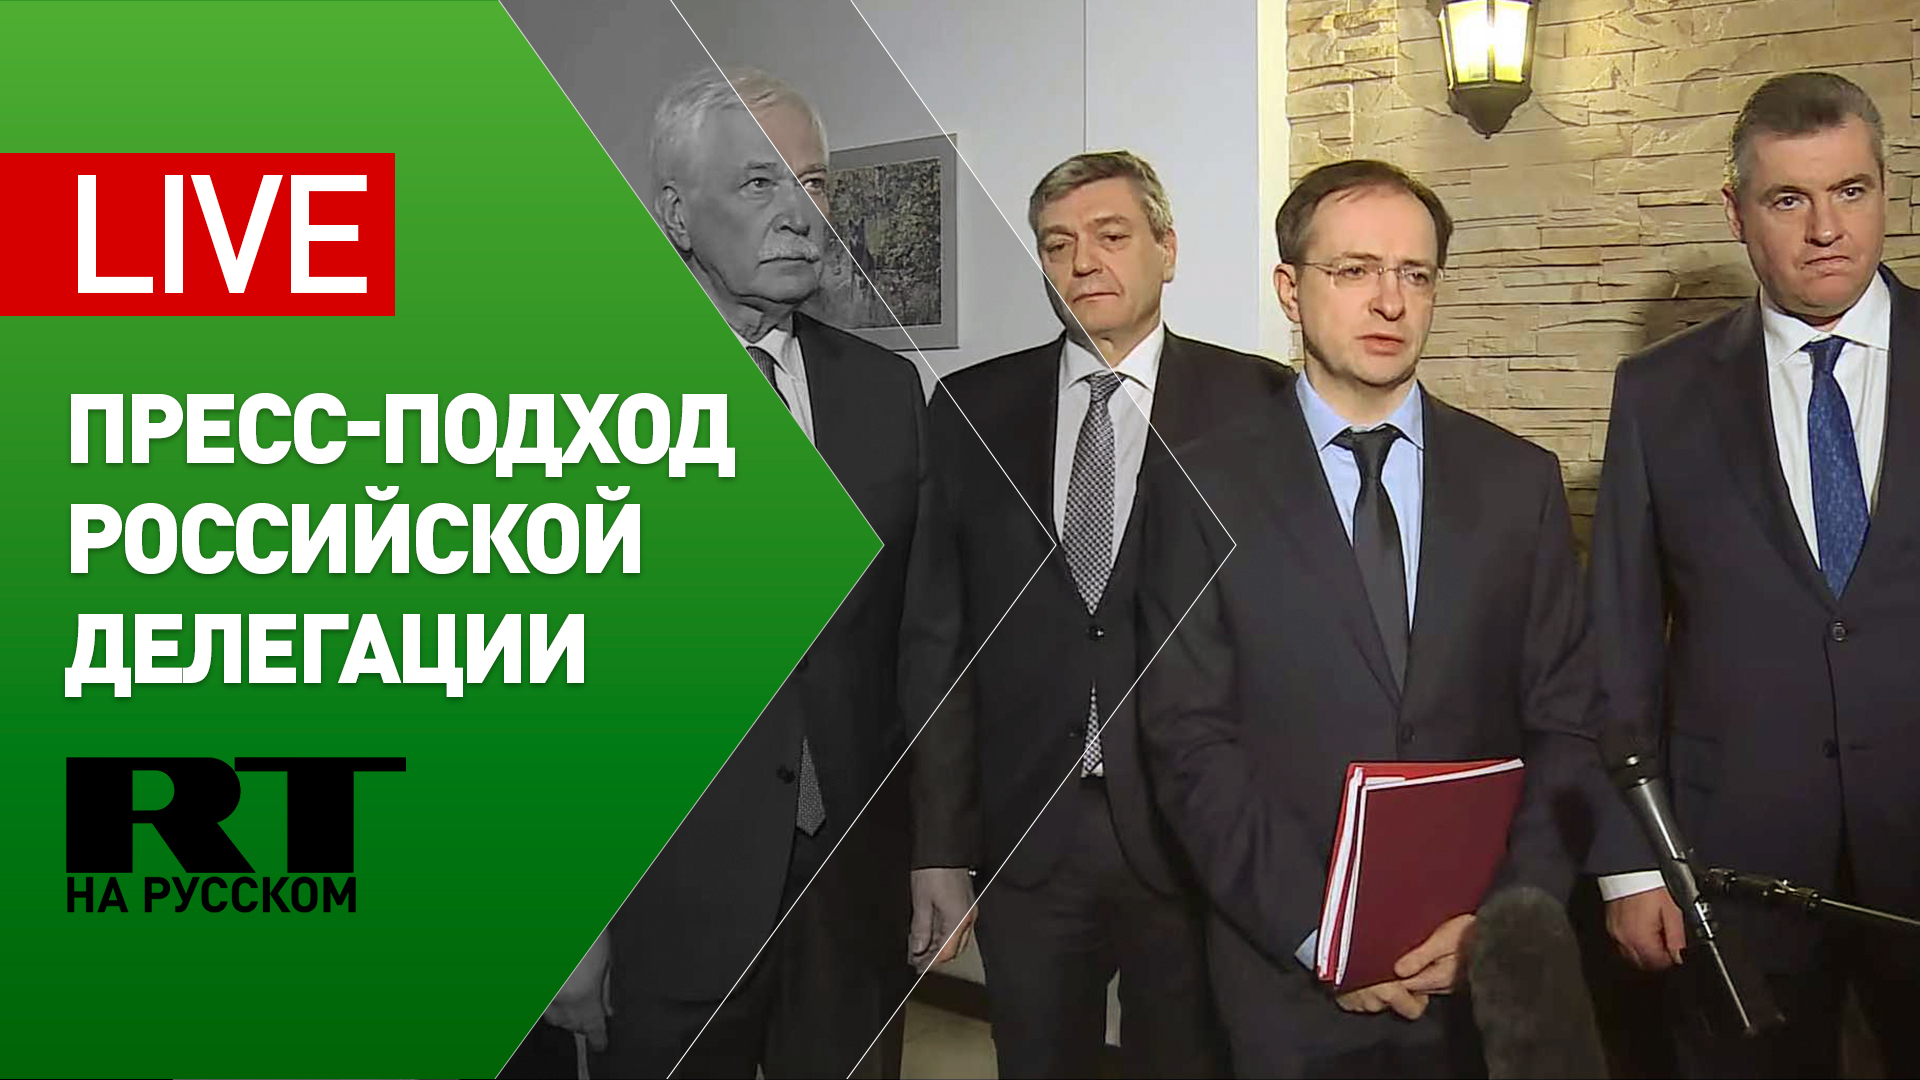 Пресс-подход российской делегации по итогам третьего раунда переговоров с Украиной — LIVE